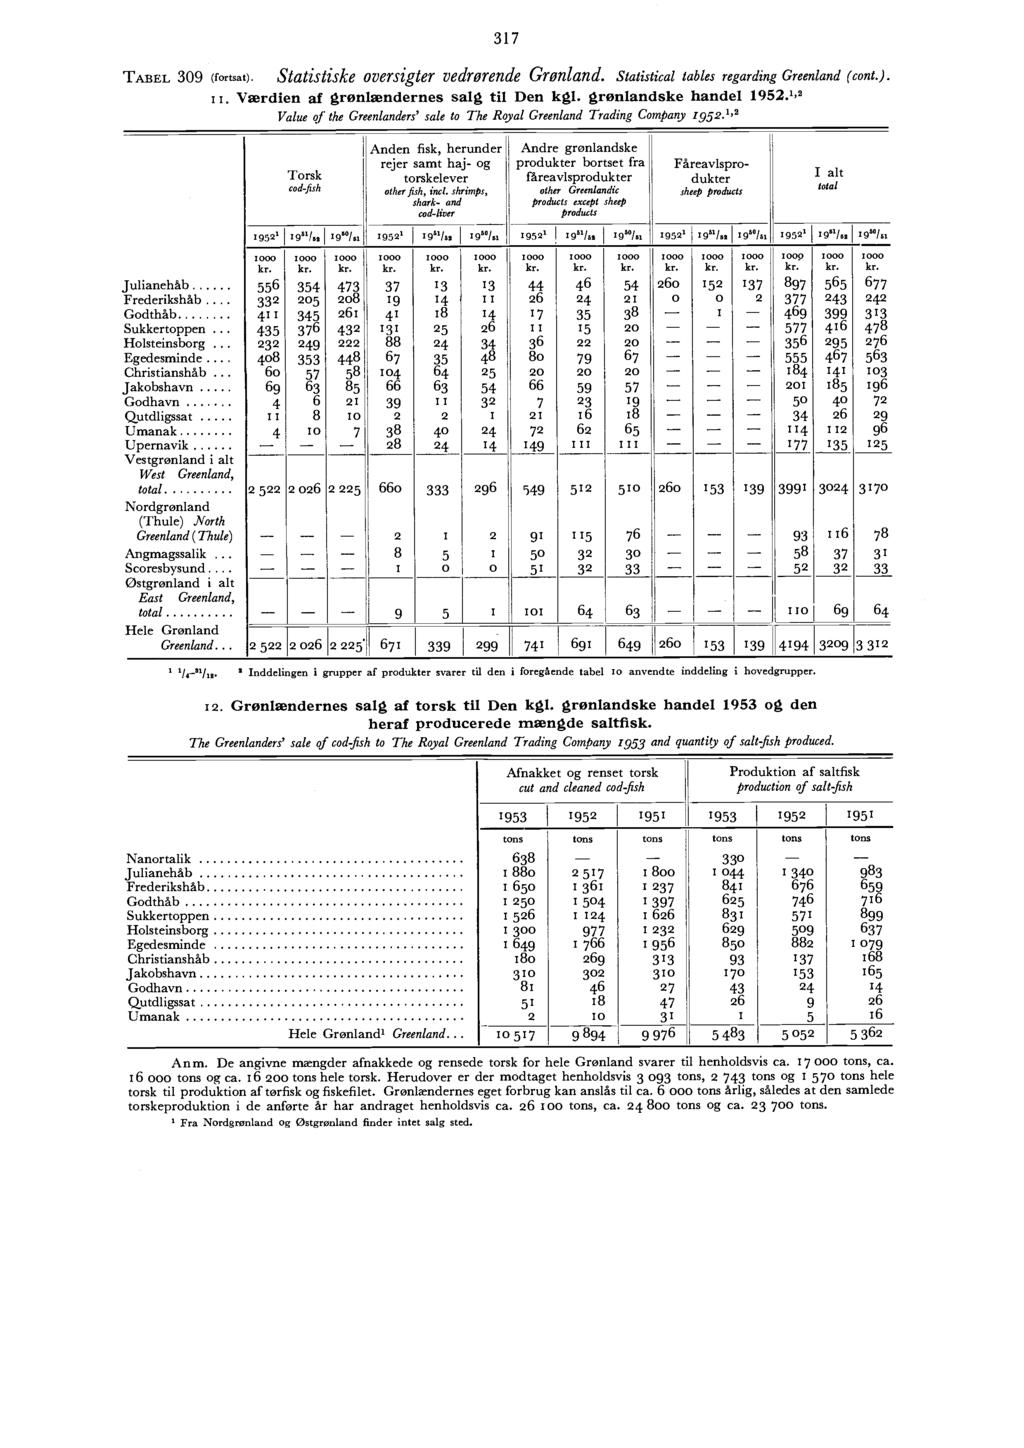 l 95 l 95 3 Statistiske oversigter vedrørende Grønland. Statistical tables regarding (cont.). il. Værdien af grønlændernes salg til Den kgl. grønlandske handel 95.